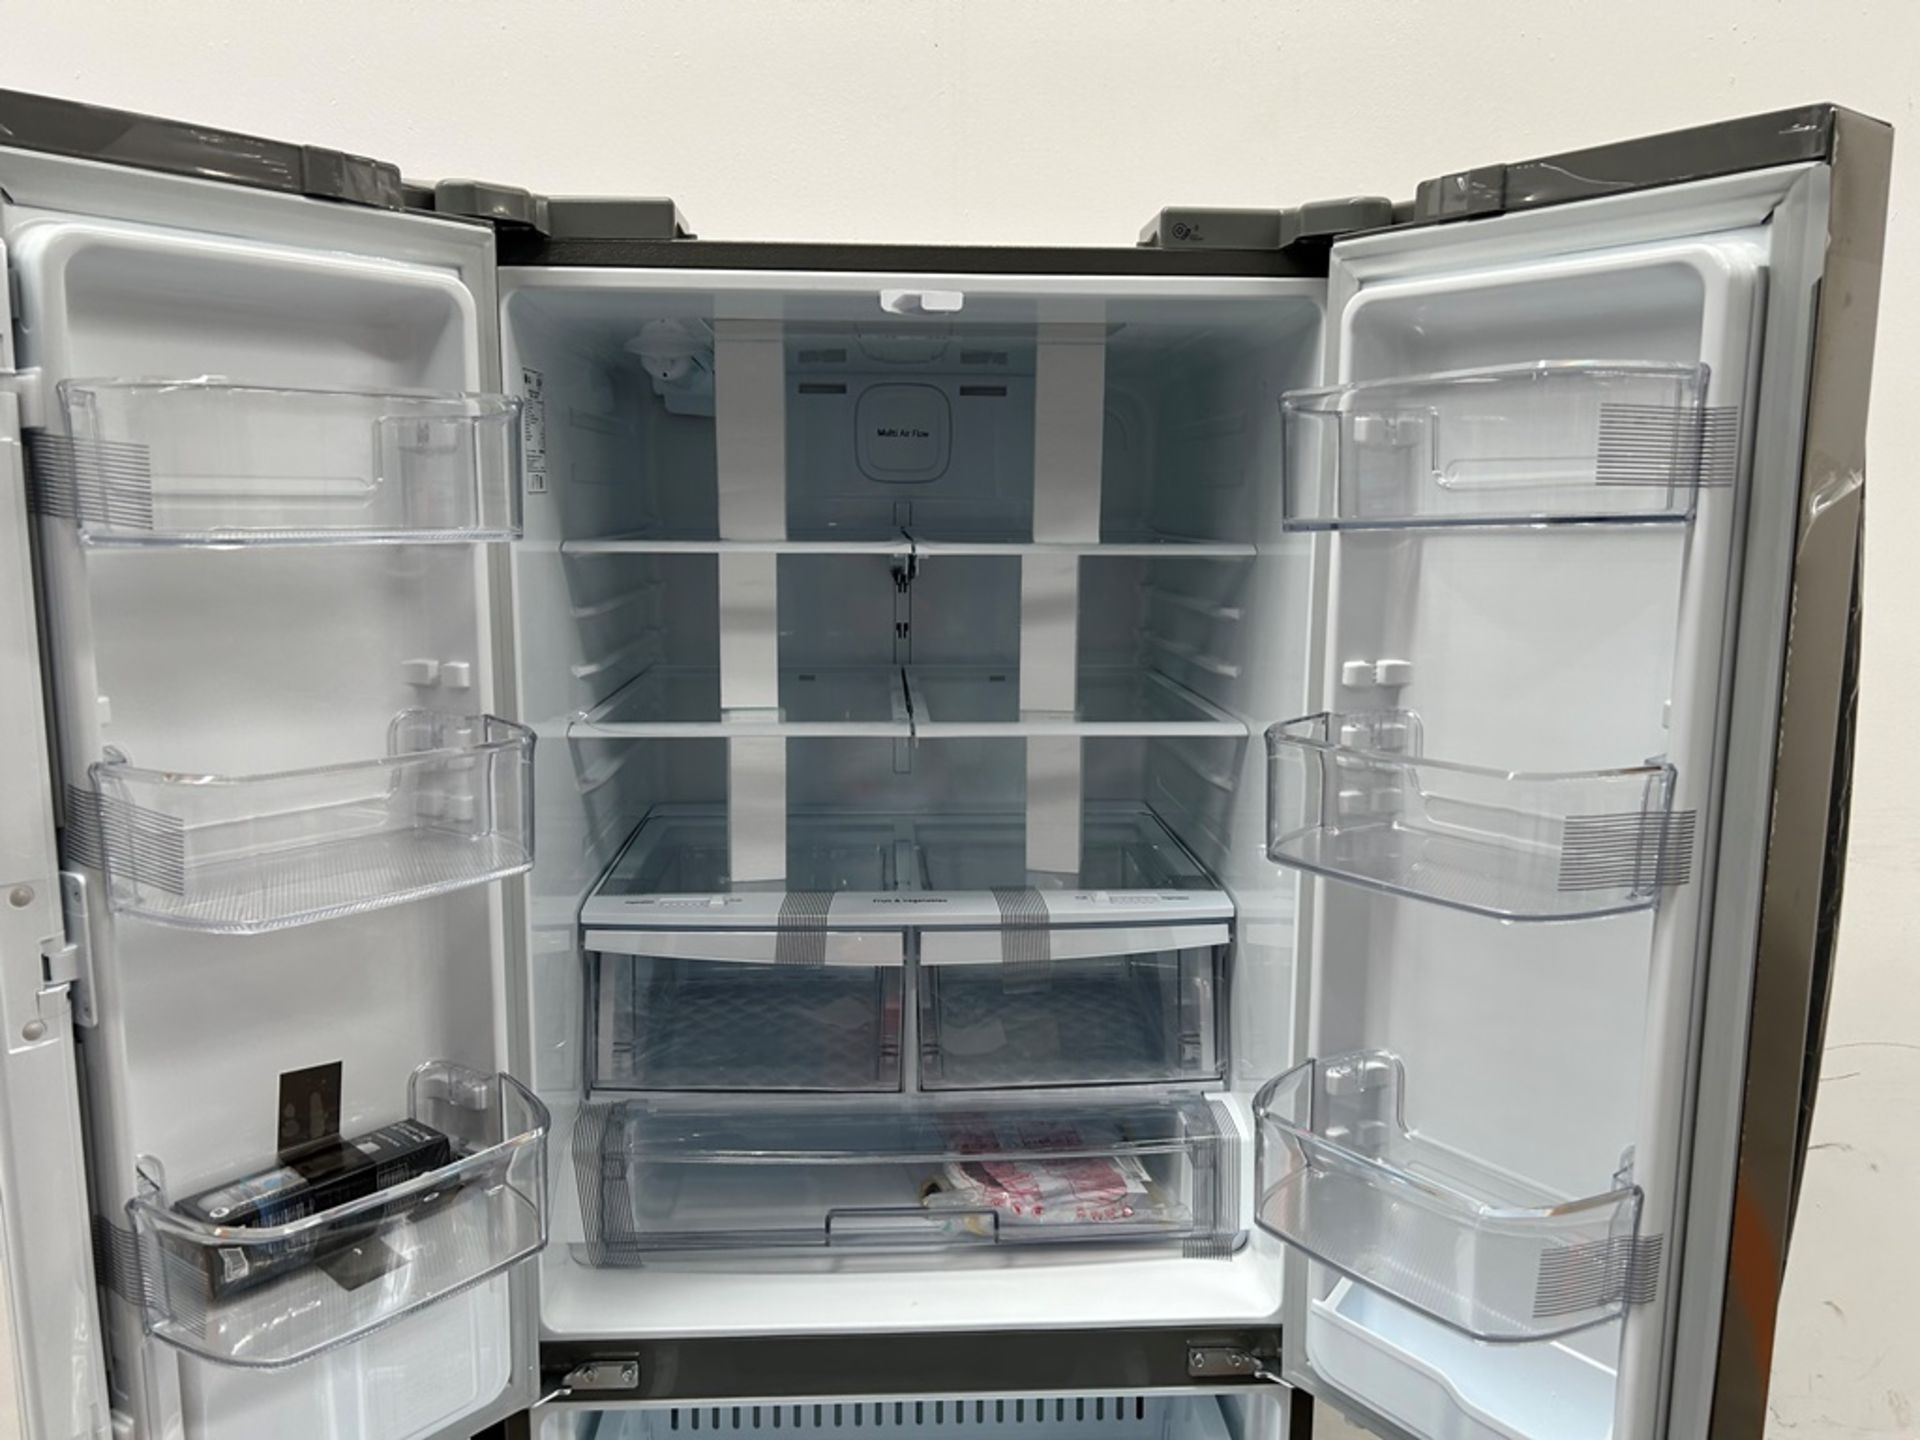 (NUEVO) Refrigerador con dispensador de agua Marca LG, Modelo GM22SGPK, Serie 28061, Color GRIS - Image 5 of 11